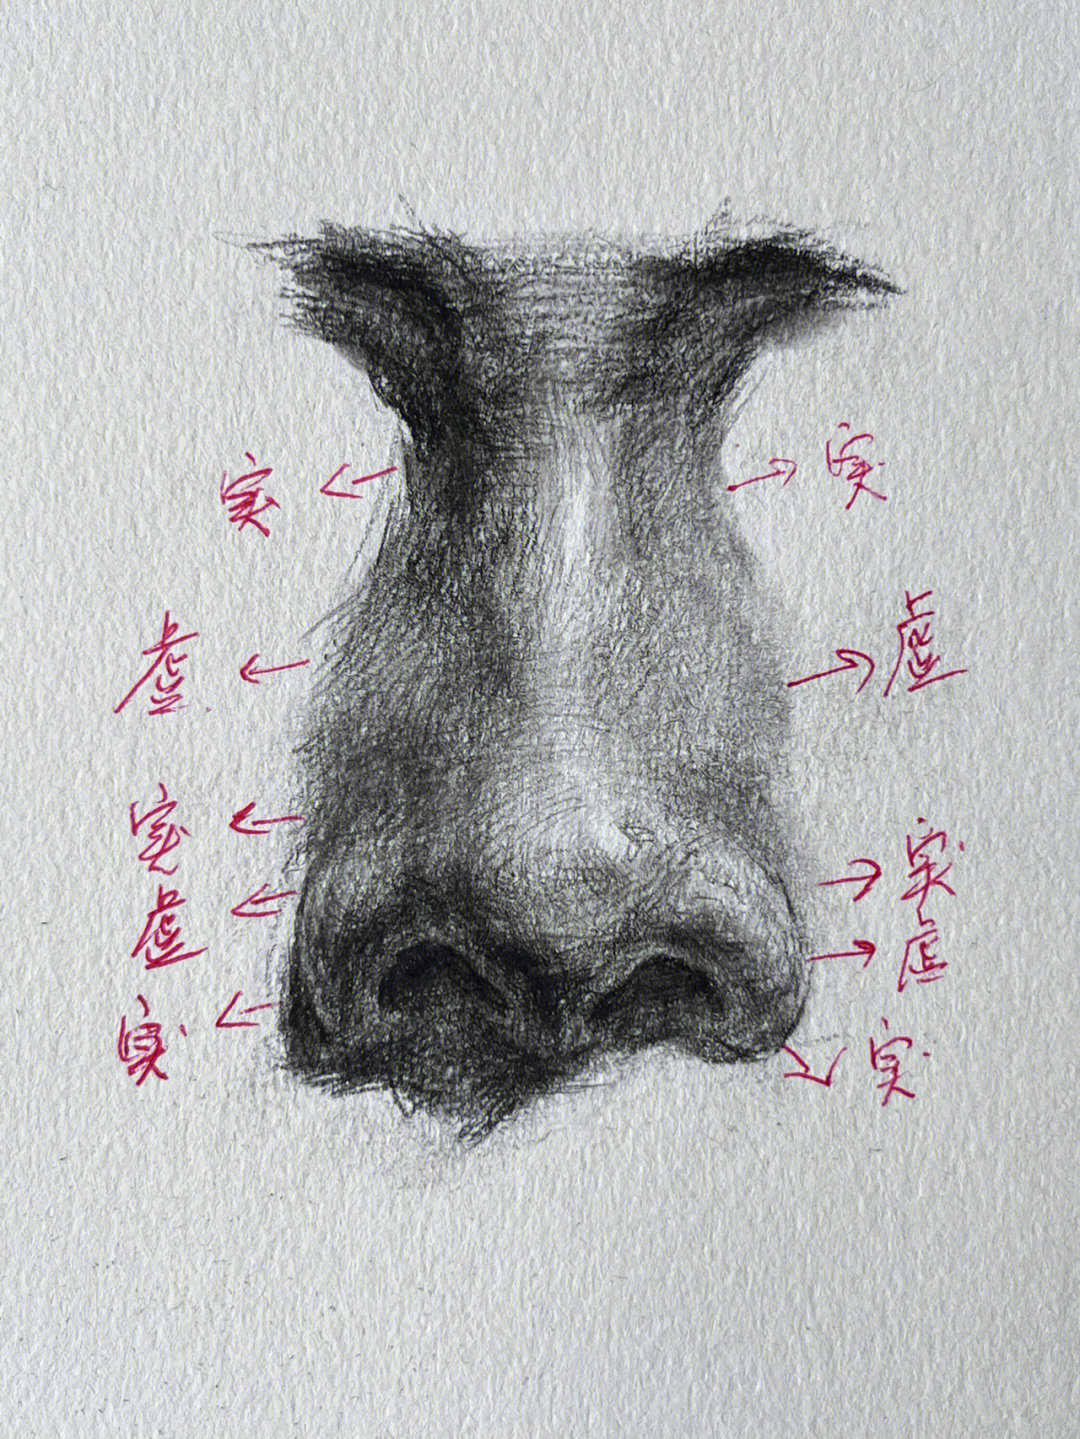 鼻子在画的时候注意鼻球与鼻翼的比例16615:默写的时候要统一光源